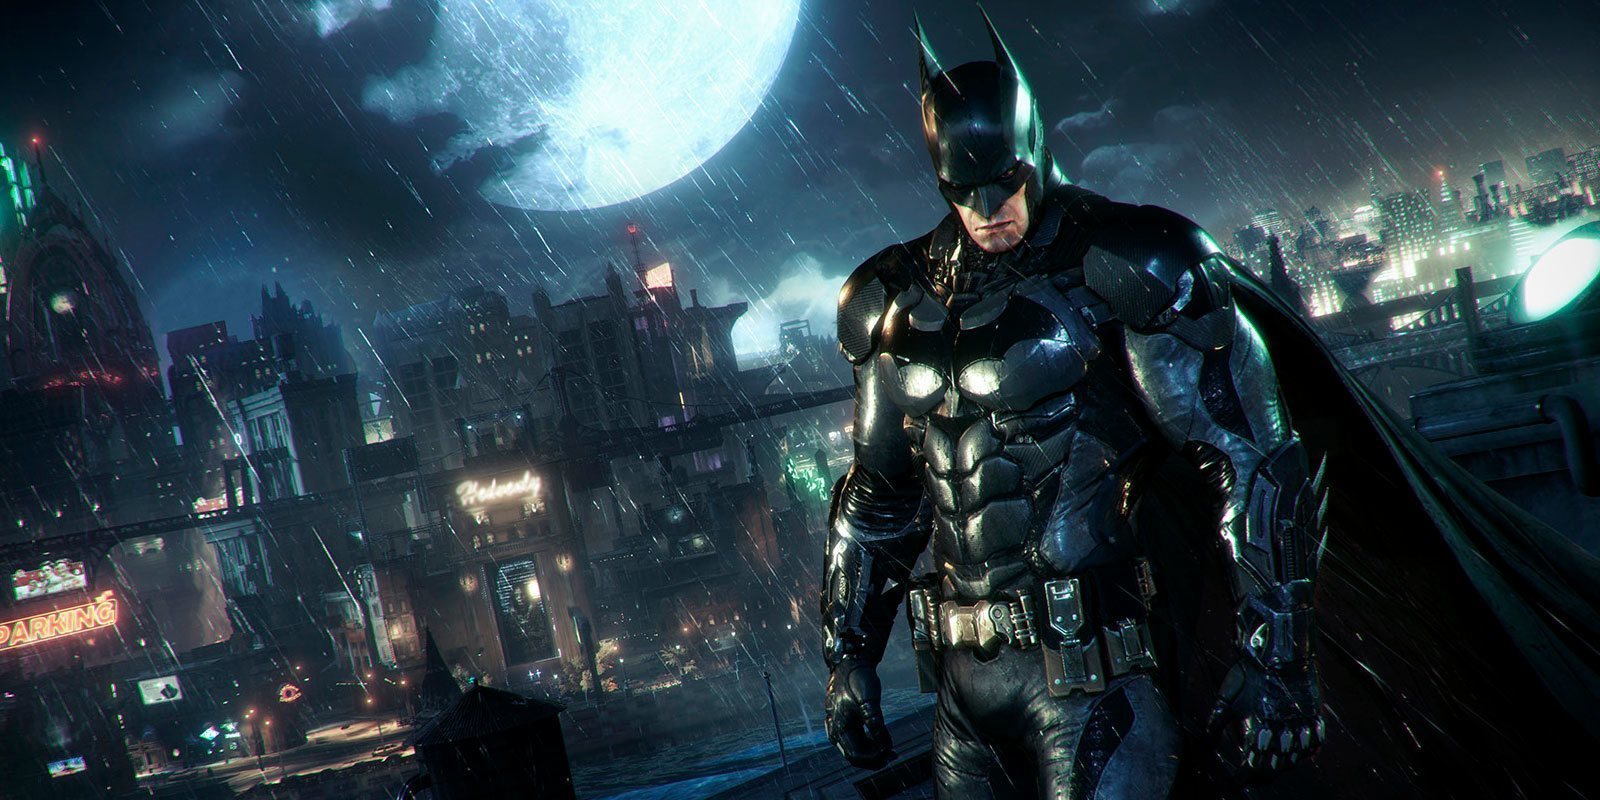 Kevin Conroy quiere otro videojuego con Batman como protagonista